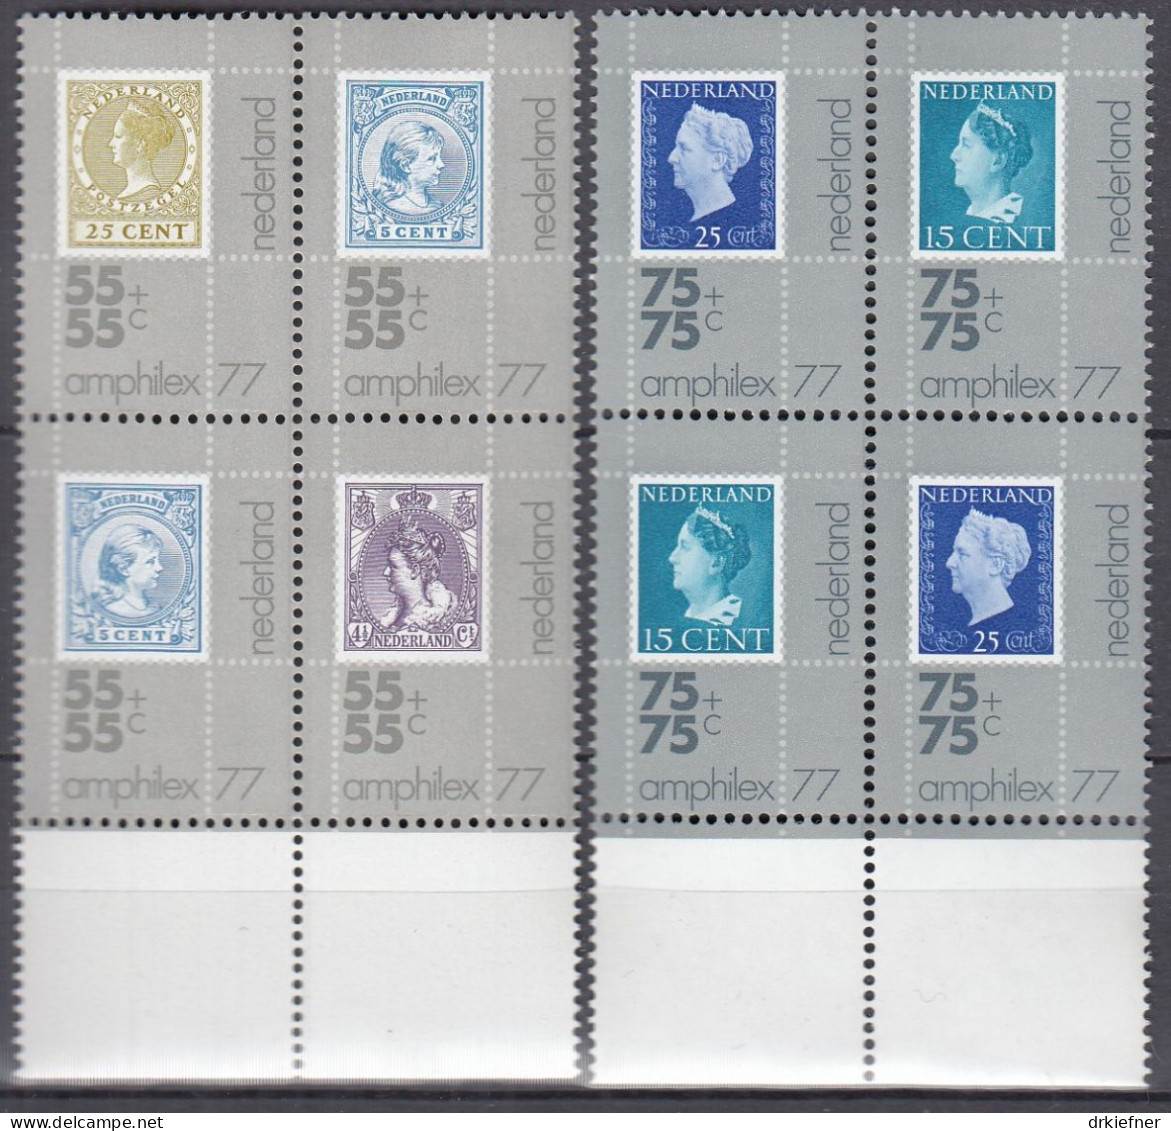 NIEDERLANDE  1083-1087, 4erBlock, Postfrisch **, Internationale Briefmarkenausstellung AMPHILEX ’77, 1976 - Ungebraucht